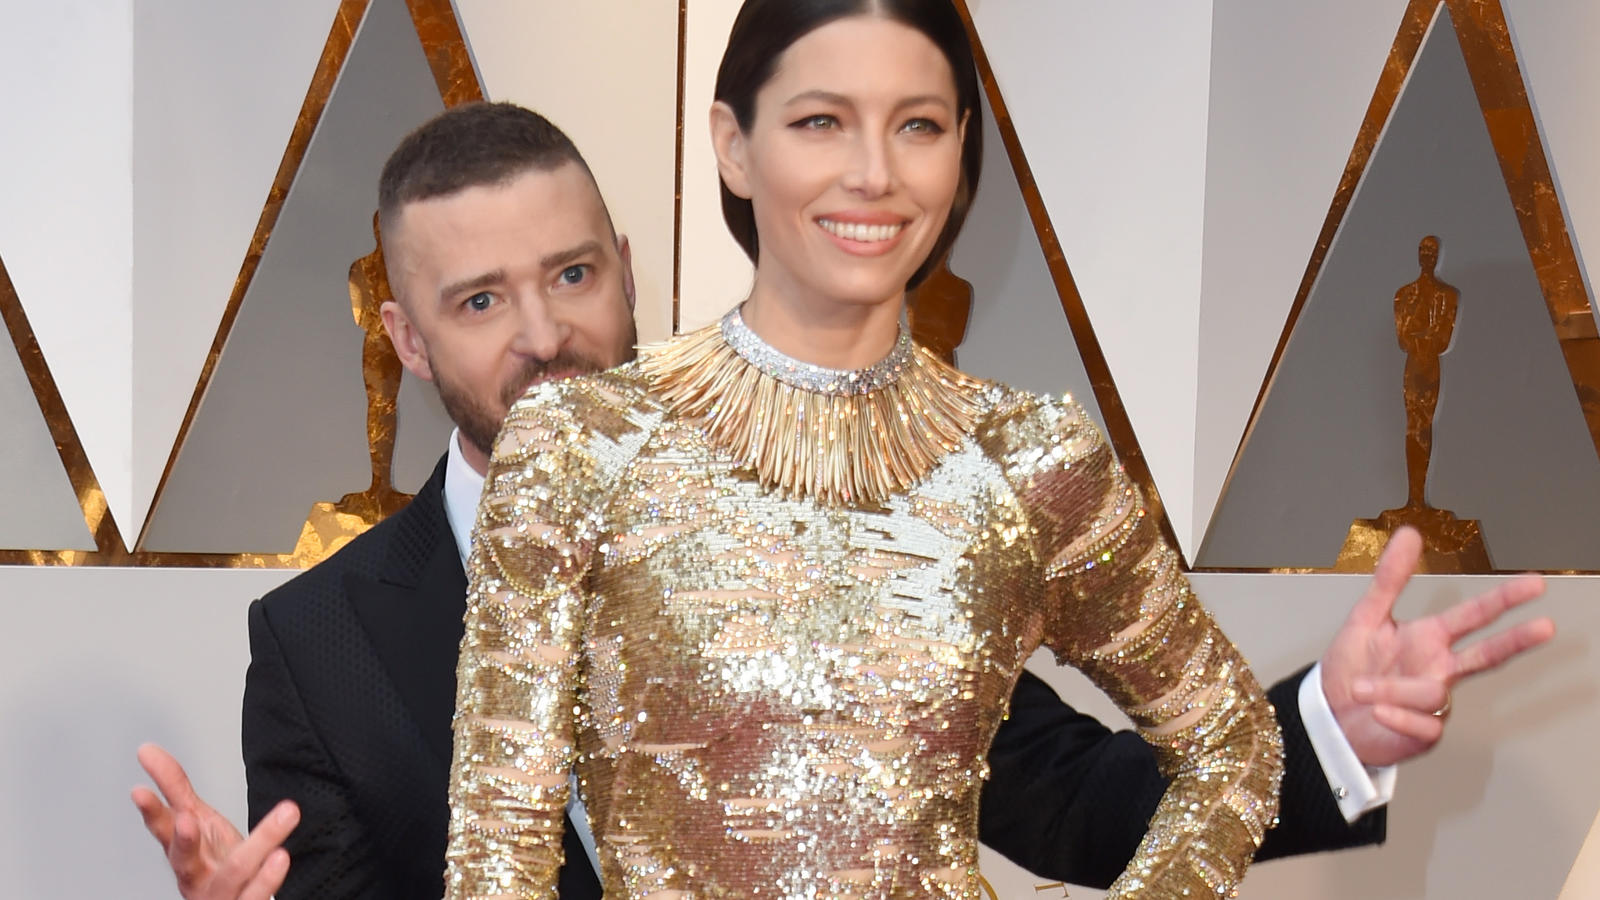 Fotobombe bei Jessica Biel: Justin Timberlake war bei den Oscars zu Späßen aufgelegt